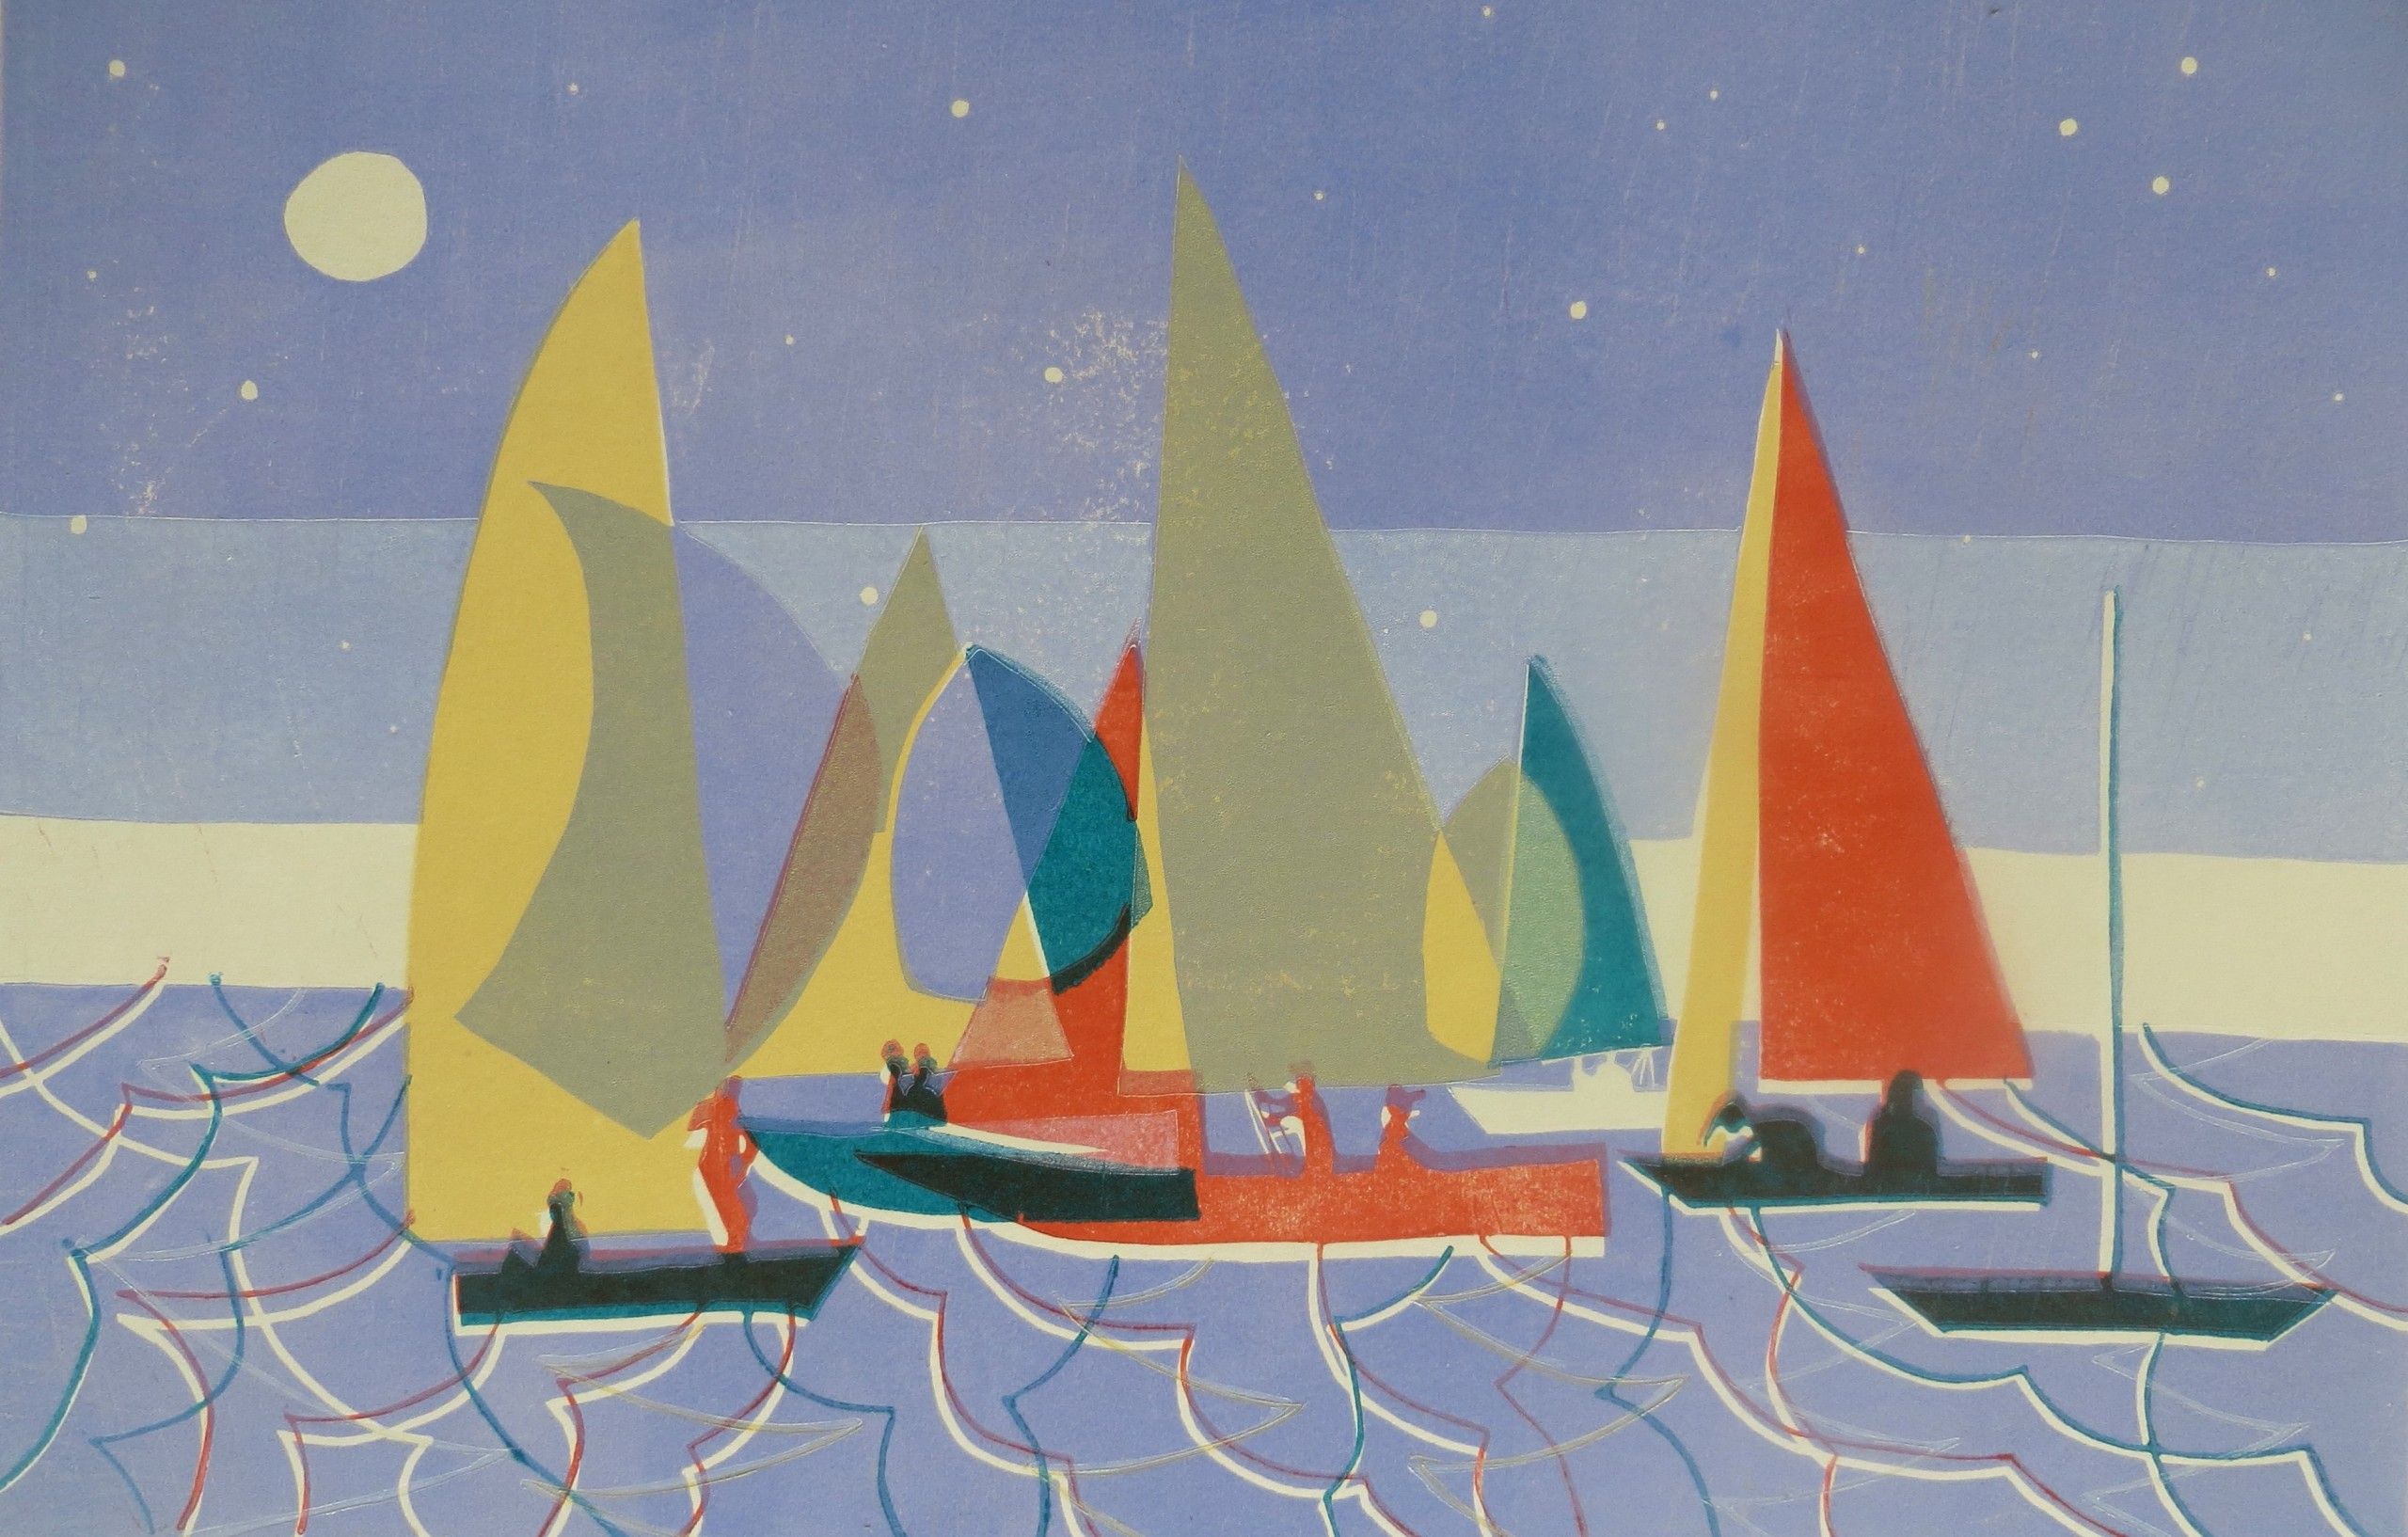 Sailing at Dusk by Lisa Takahashi